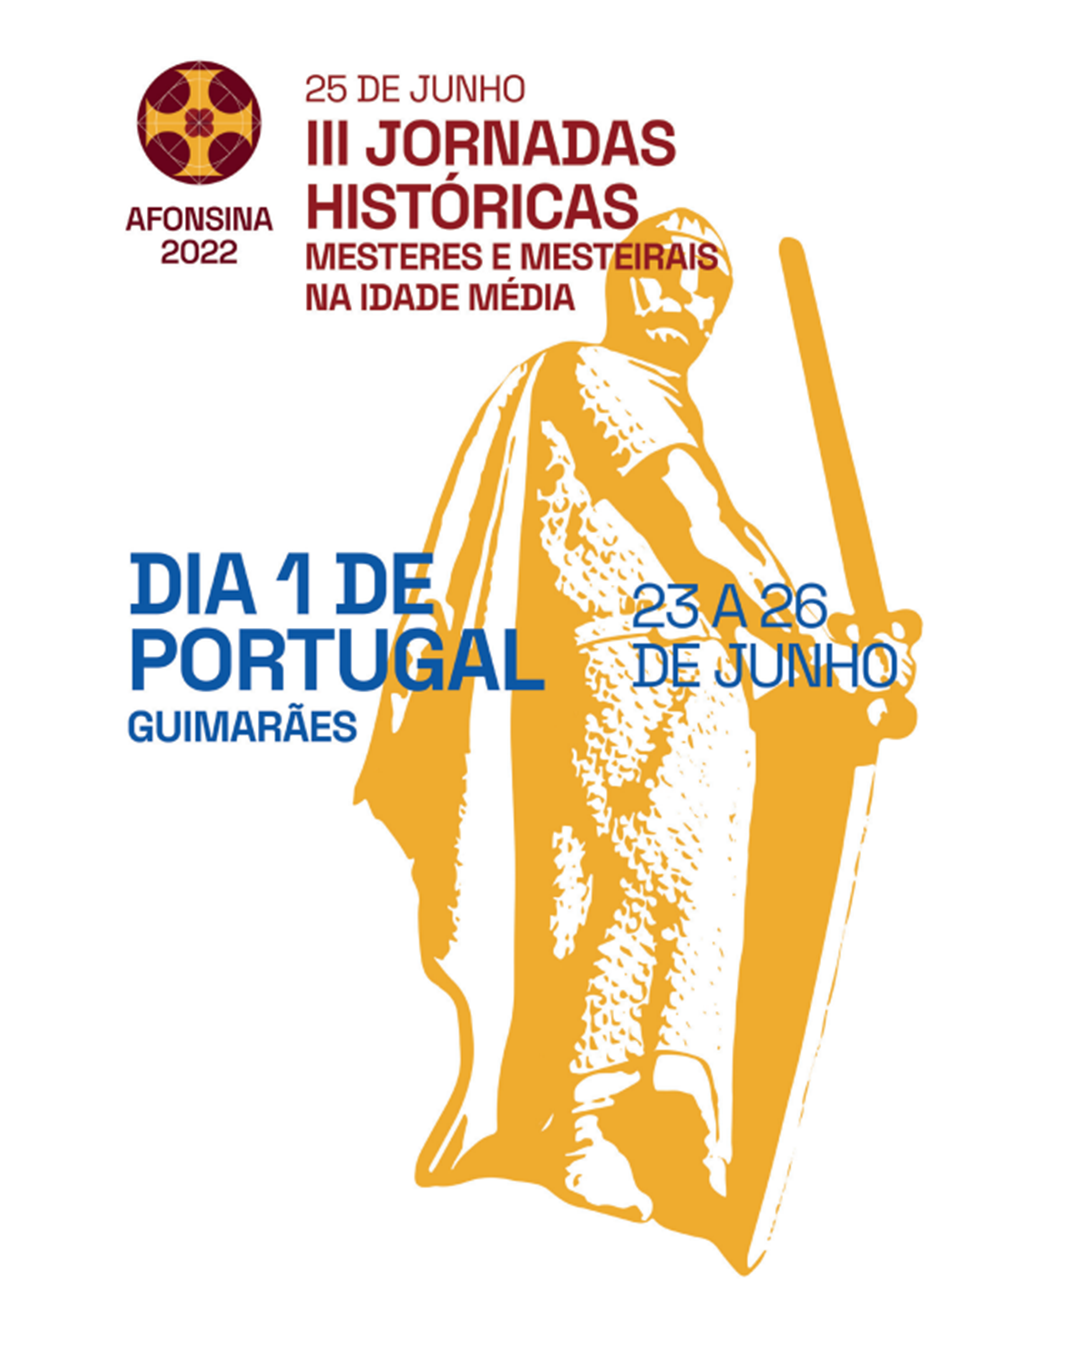 III Jornadas Históricas de Guimarães "Mesteres e Mesteirais na Idade Média" image